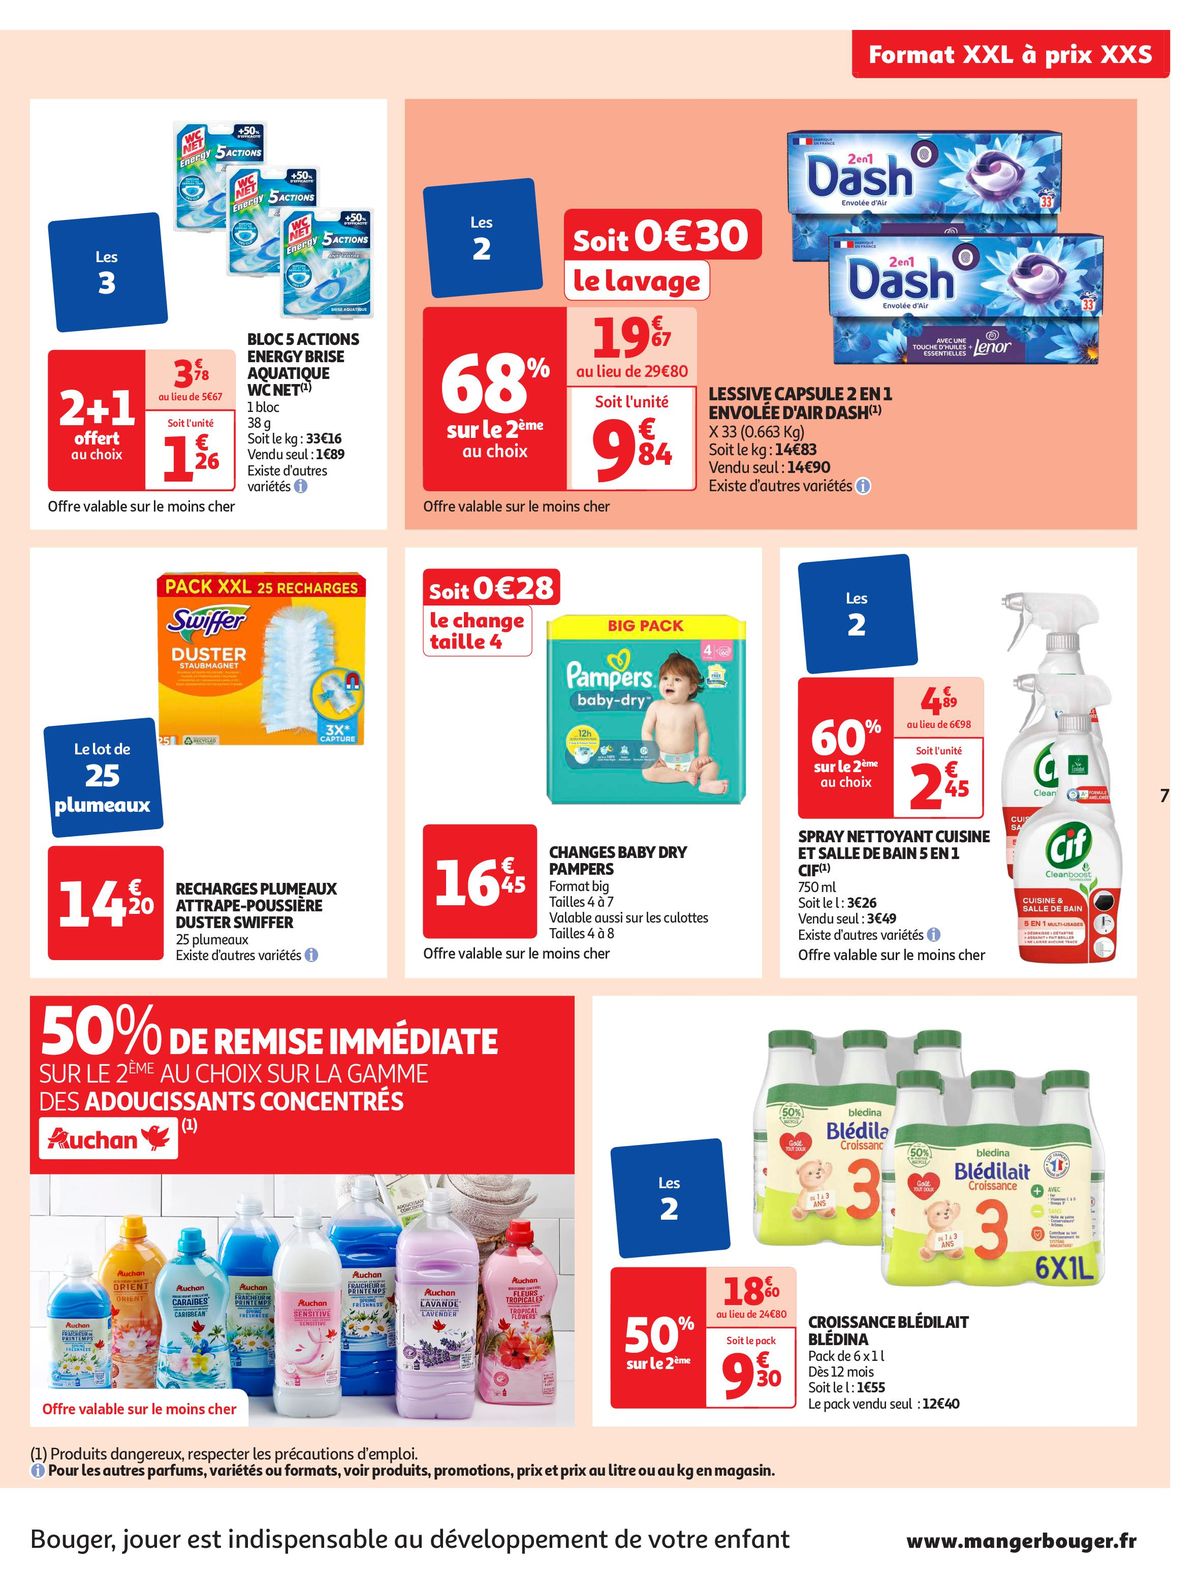 Catalogue Format XXL à prix XXS dans votre supermarché, page 00007